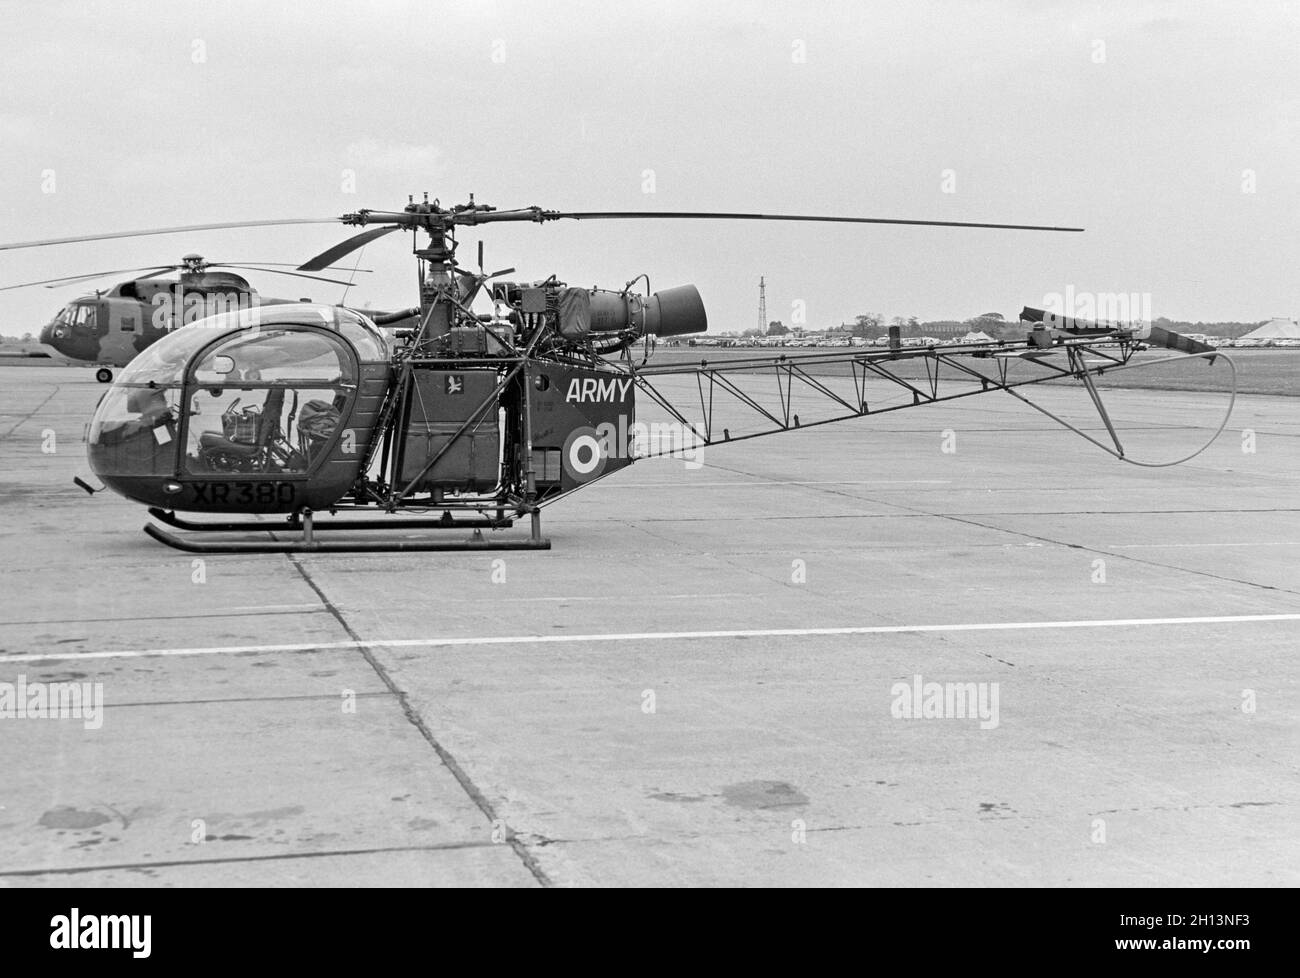 Un hélicoptère Alouette du corps aérien de l'armée britannique Aerospatiale se.3130, numéro de série XR380.Photo prise à l'église de la RAF Fenton le 25 mai 1970. Banque D'Images